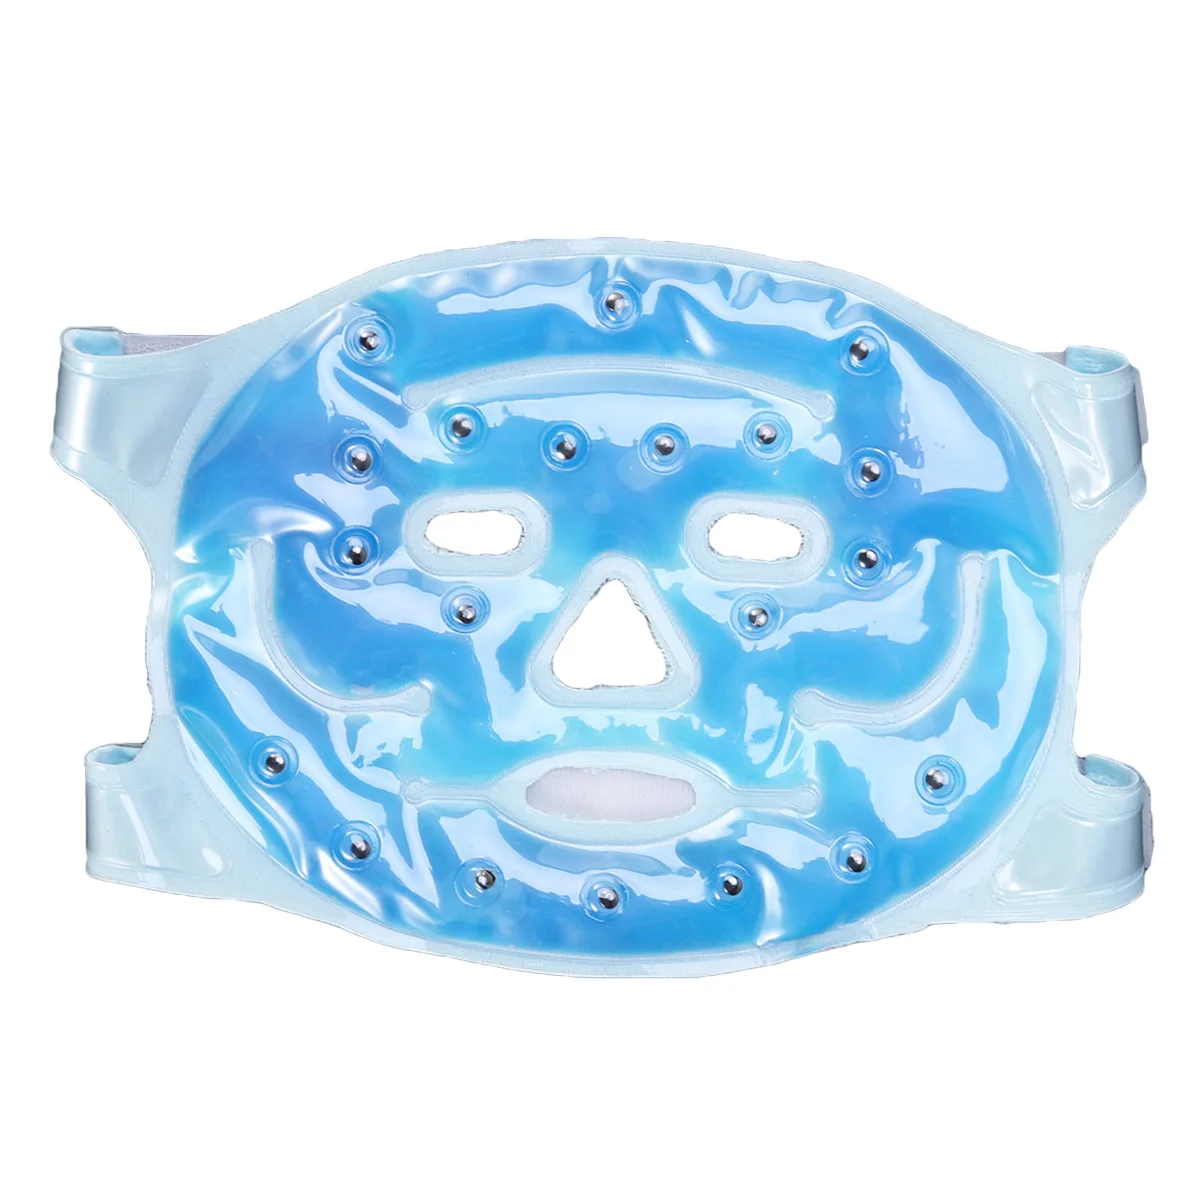 Для лица Ice Mask Гель Pad похудения красота массаж холодный уход за кожей лица маска для защиты лица для темных кругов стресс аллергии